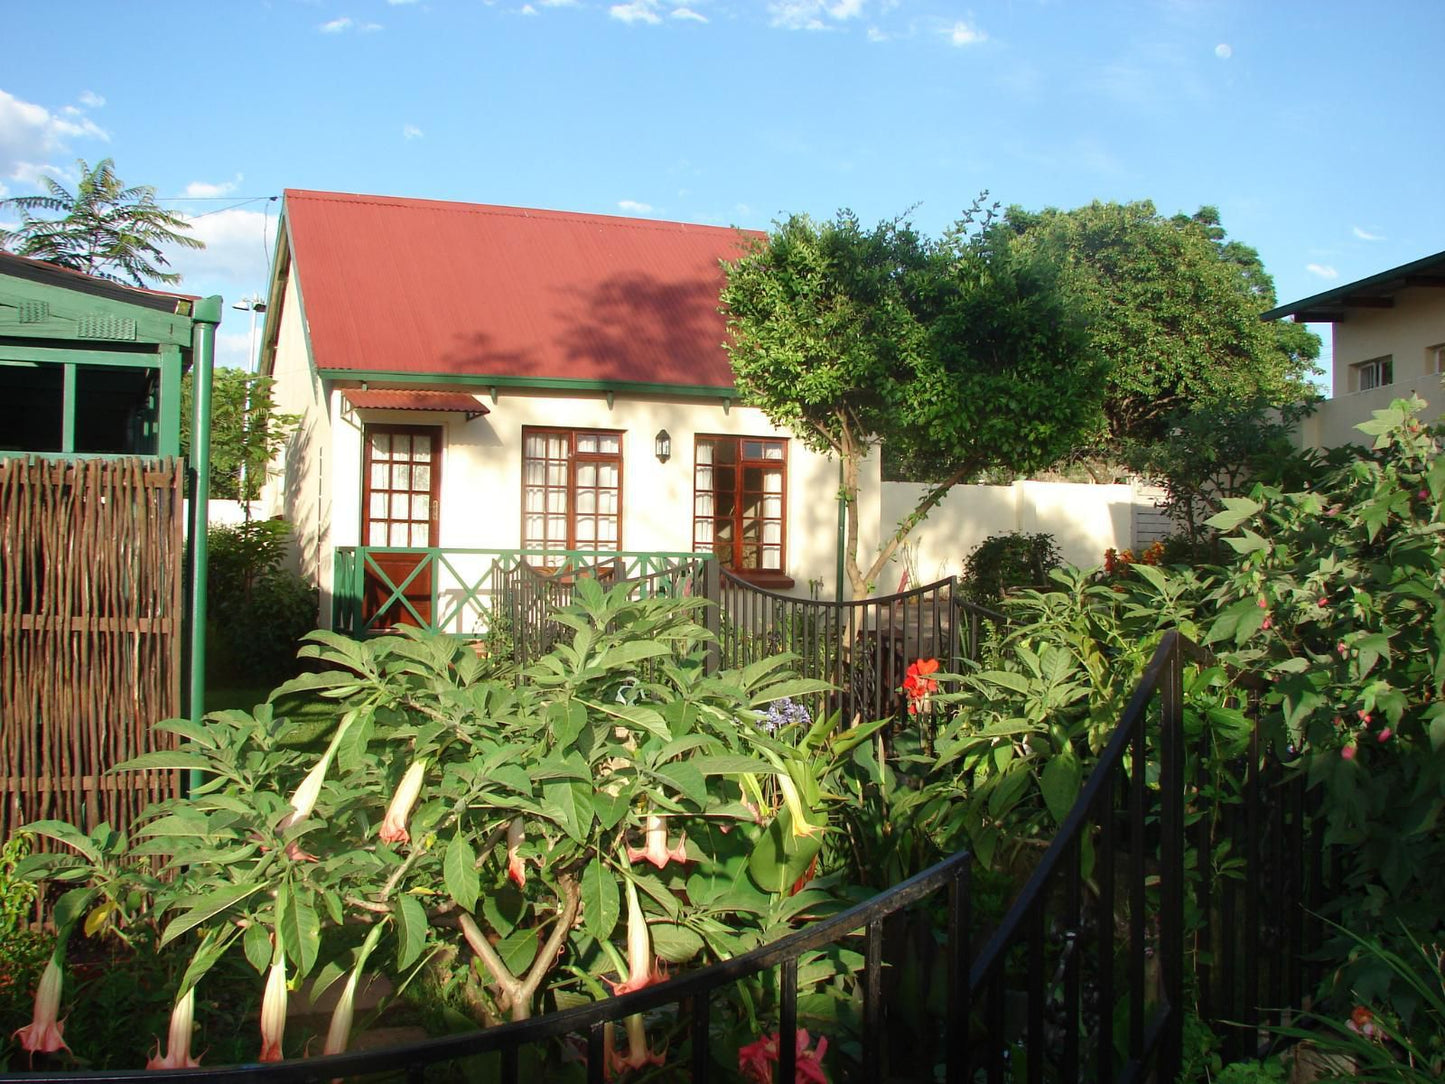 Petal Faire Cottage Colbyn Pretoria Tshwane Gauteng South Africa Complementary Colors, Building, Architecture, House